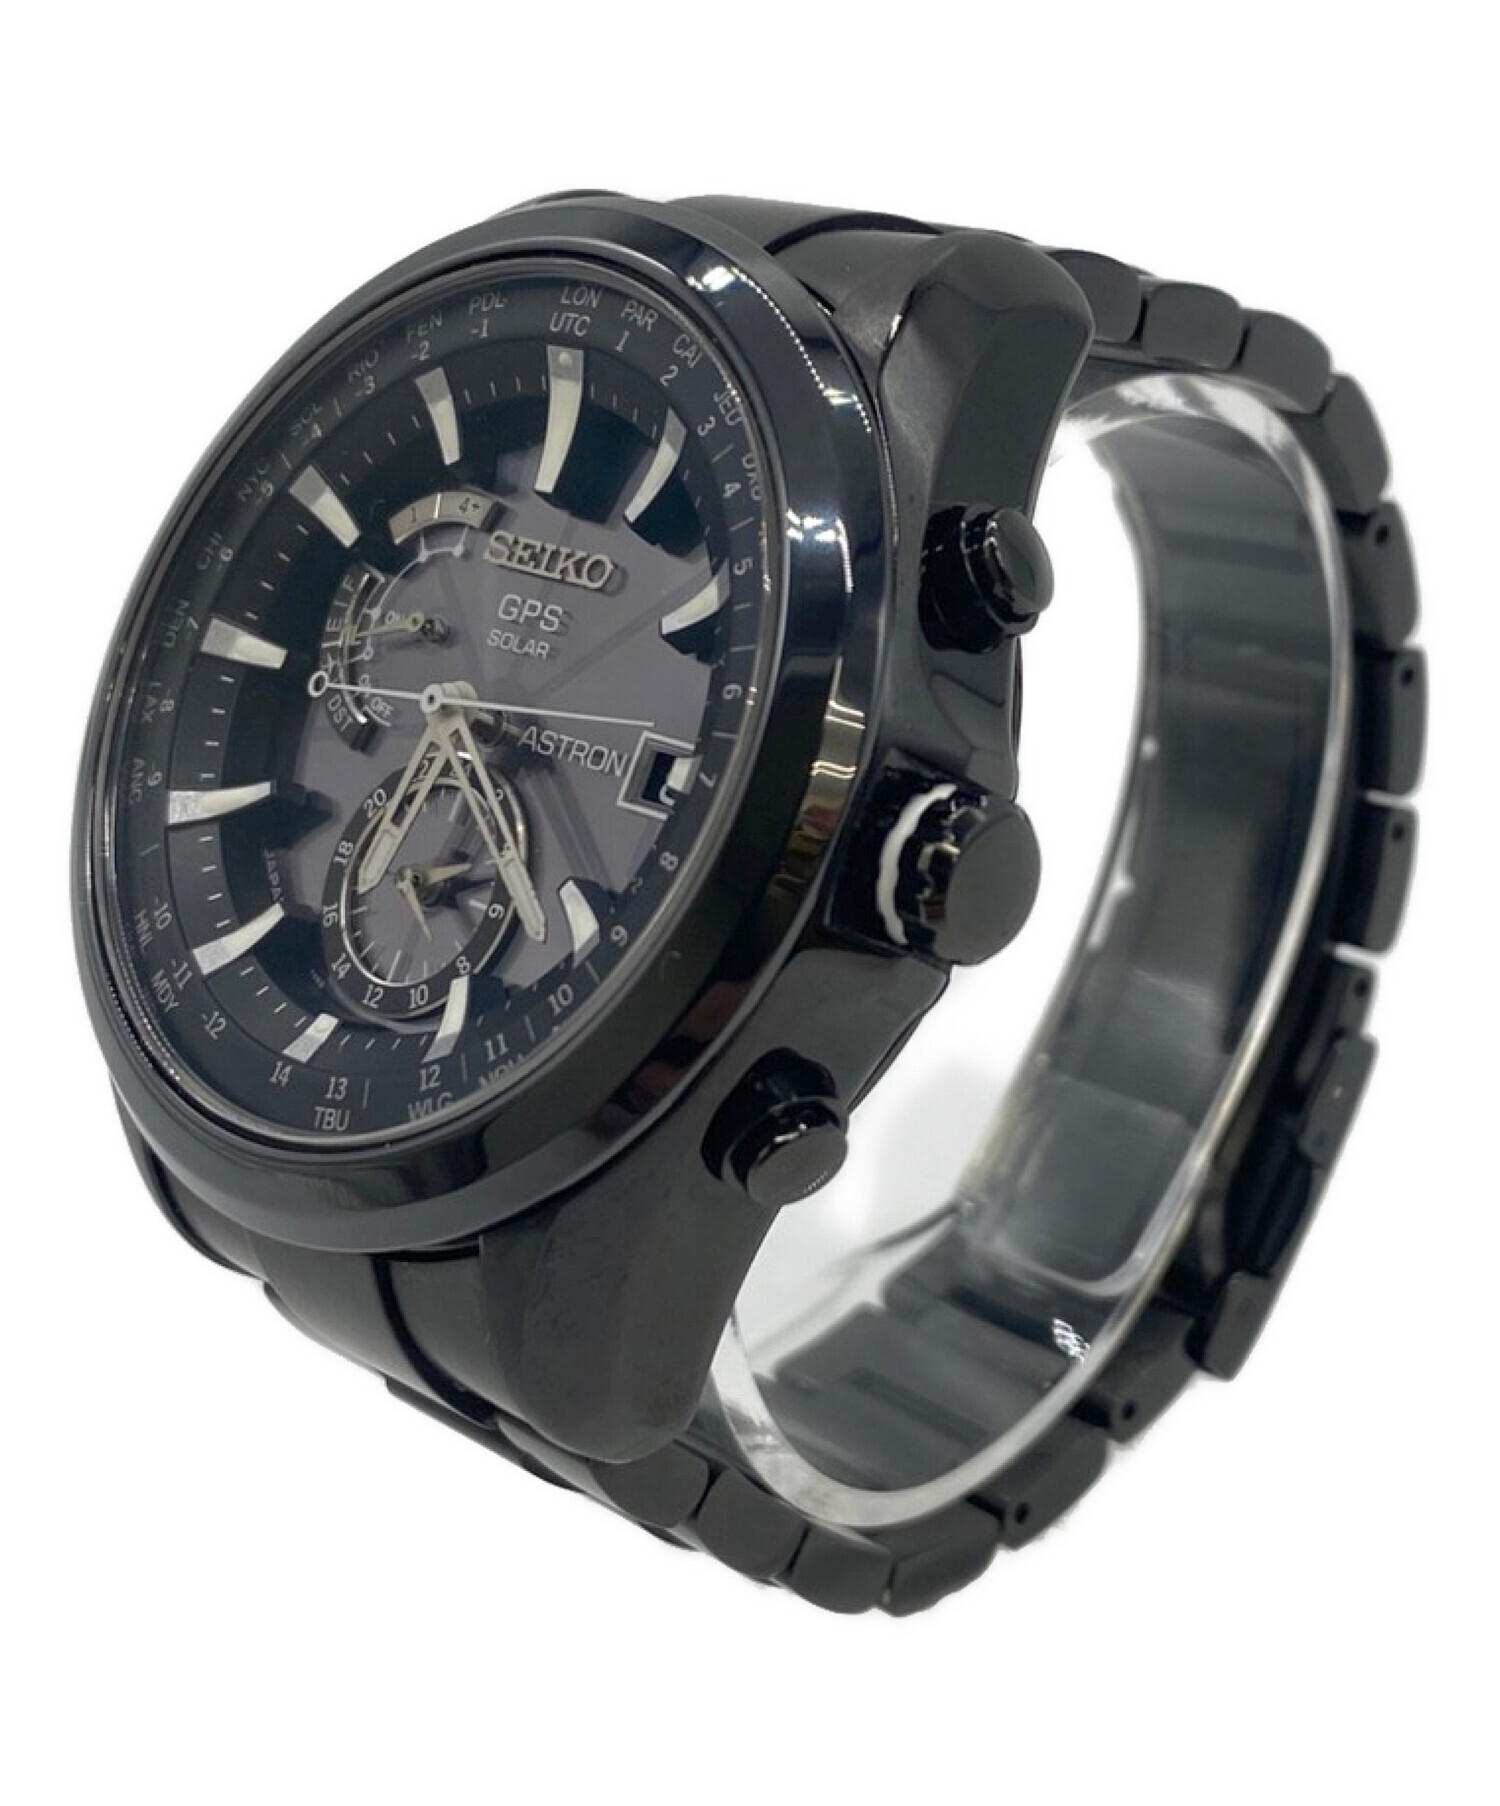 SEIKO (セイコー) アストロン ソーラーGPS腕時計 ブラック